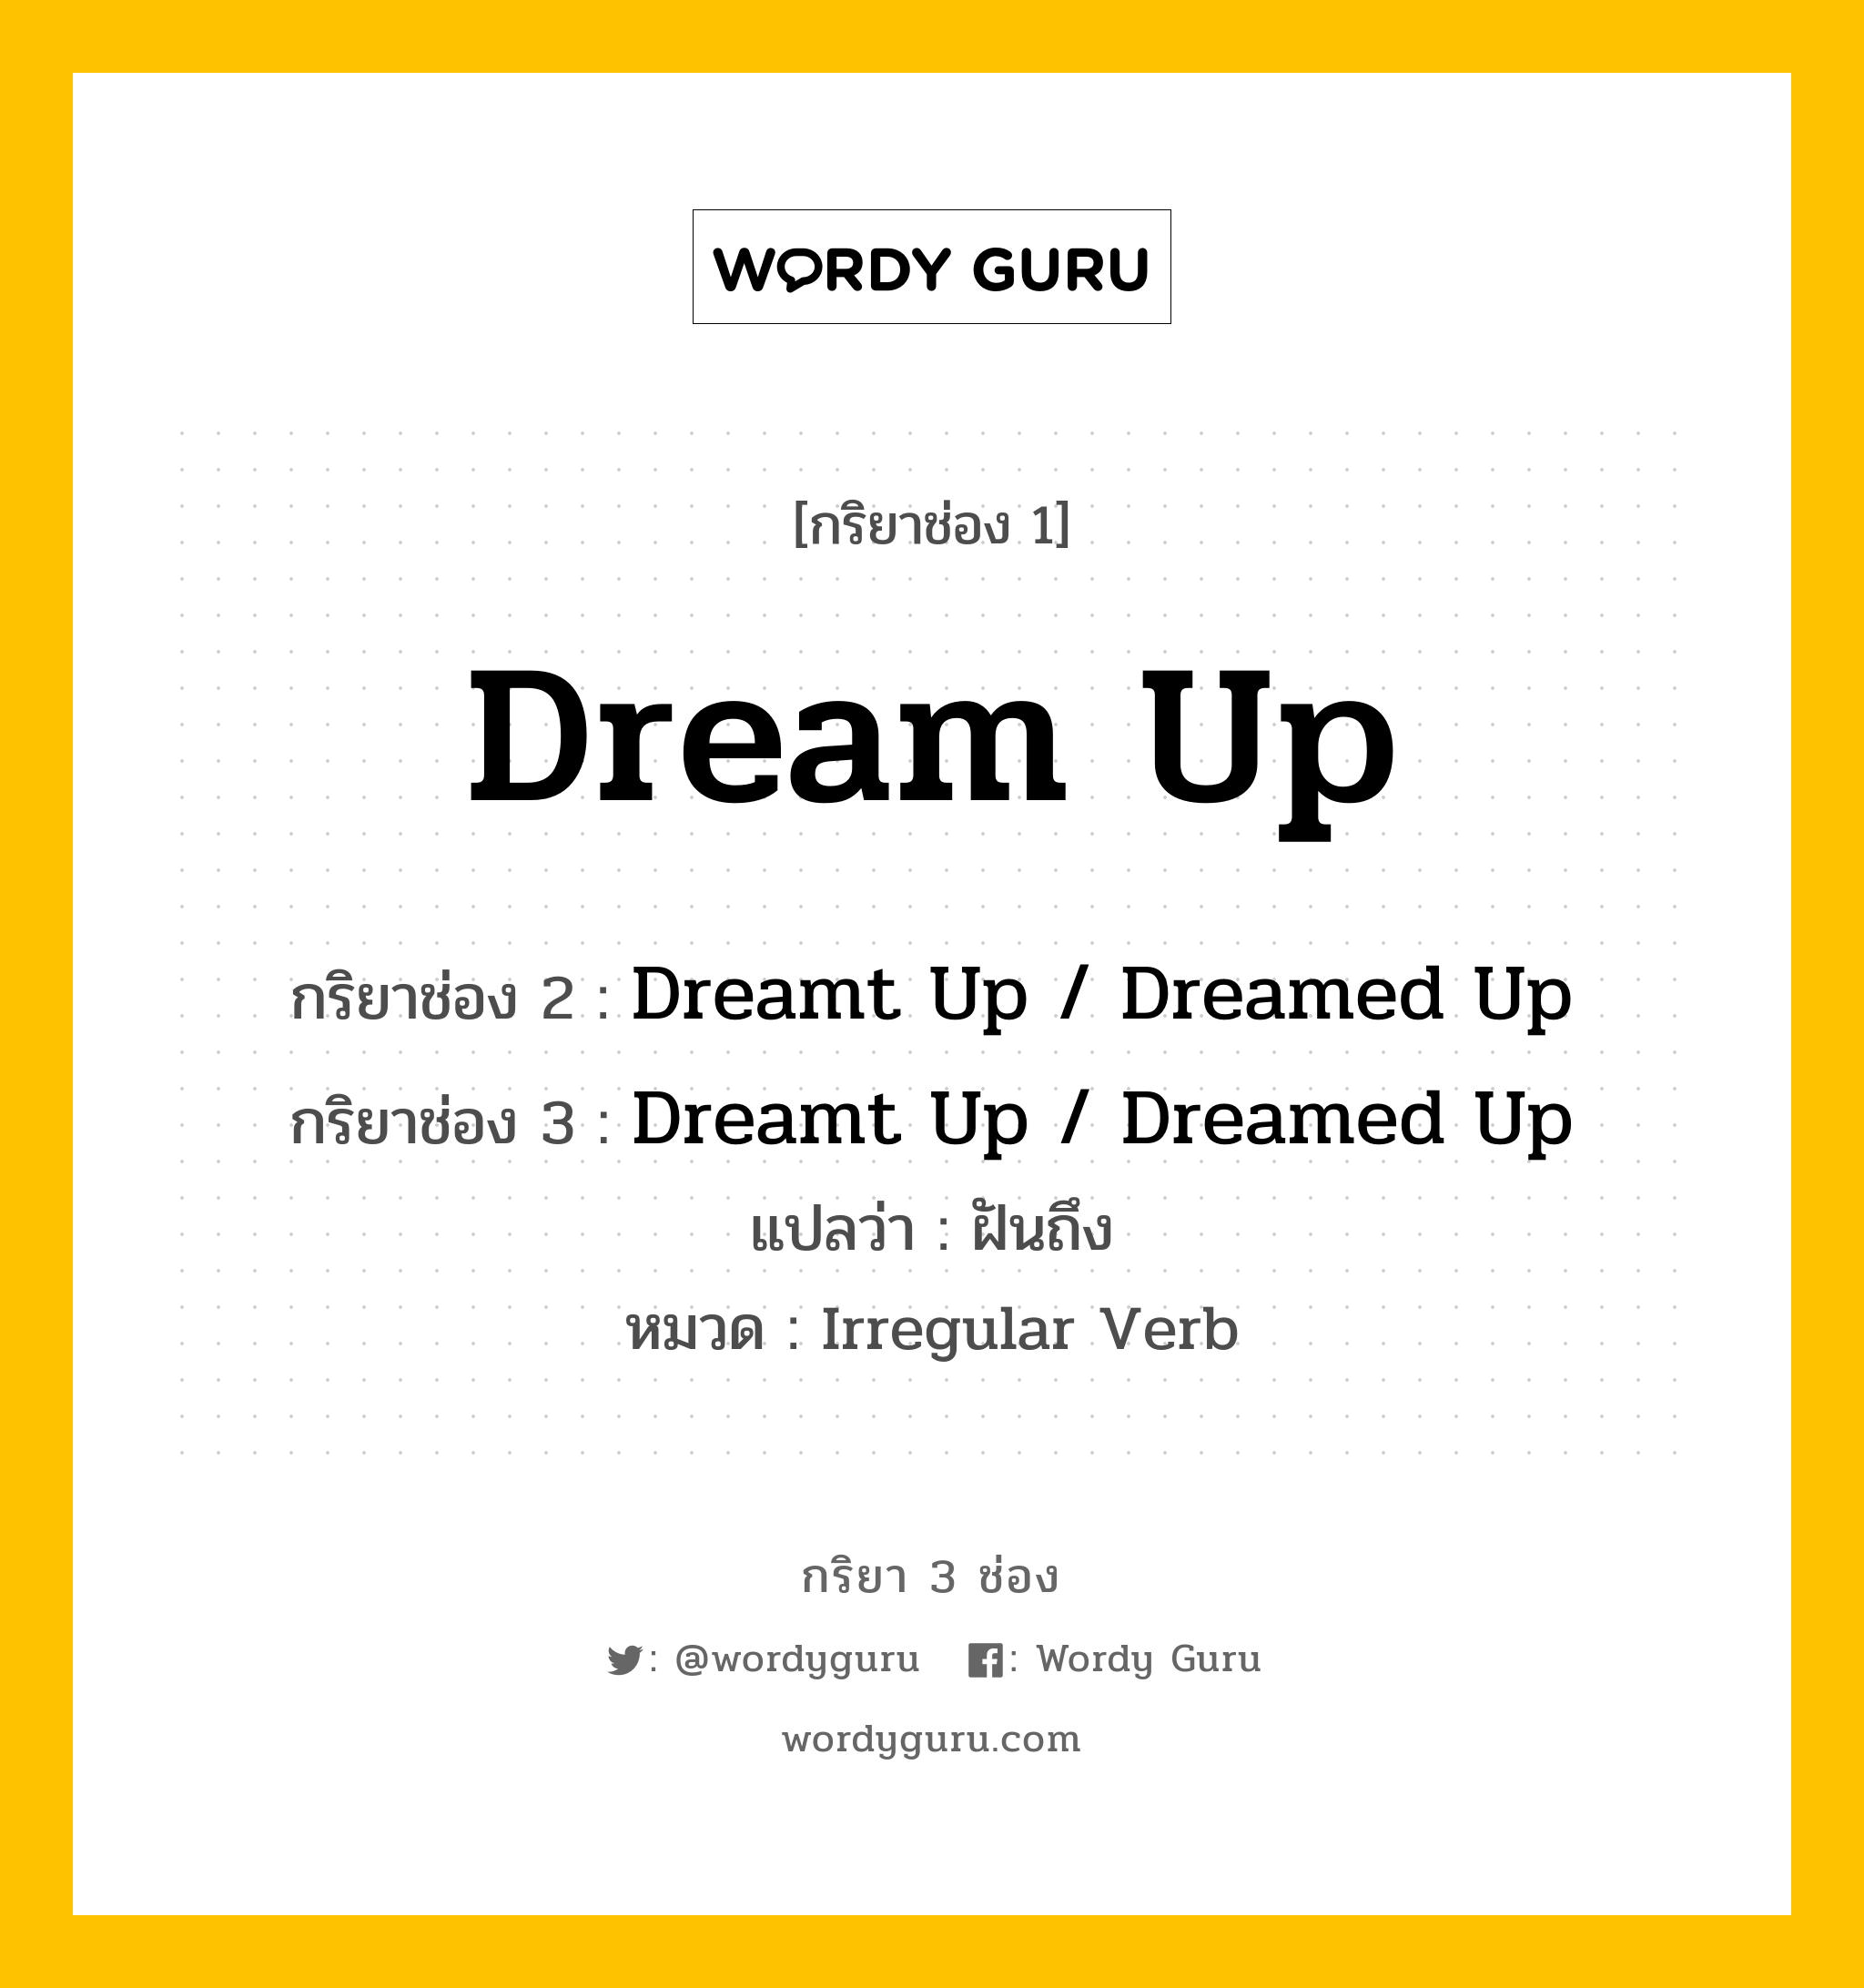 Dream Up มีกริยา 3 ช่องอะไรบ้าง? คำศัพท์ในกลุ่มประเภท Irregular Verb, กริยาช่อง 1 Dream Up กริยาช่อง 2 Dreamt Up / Dreamed Up กริยาช่อง 3 Dreamt Up / Dreamed Up แปลว่า ฝันถึง หมวด Irregular Verb หมวด Irregular Verb